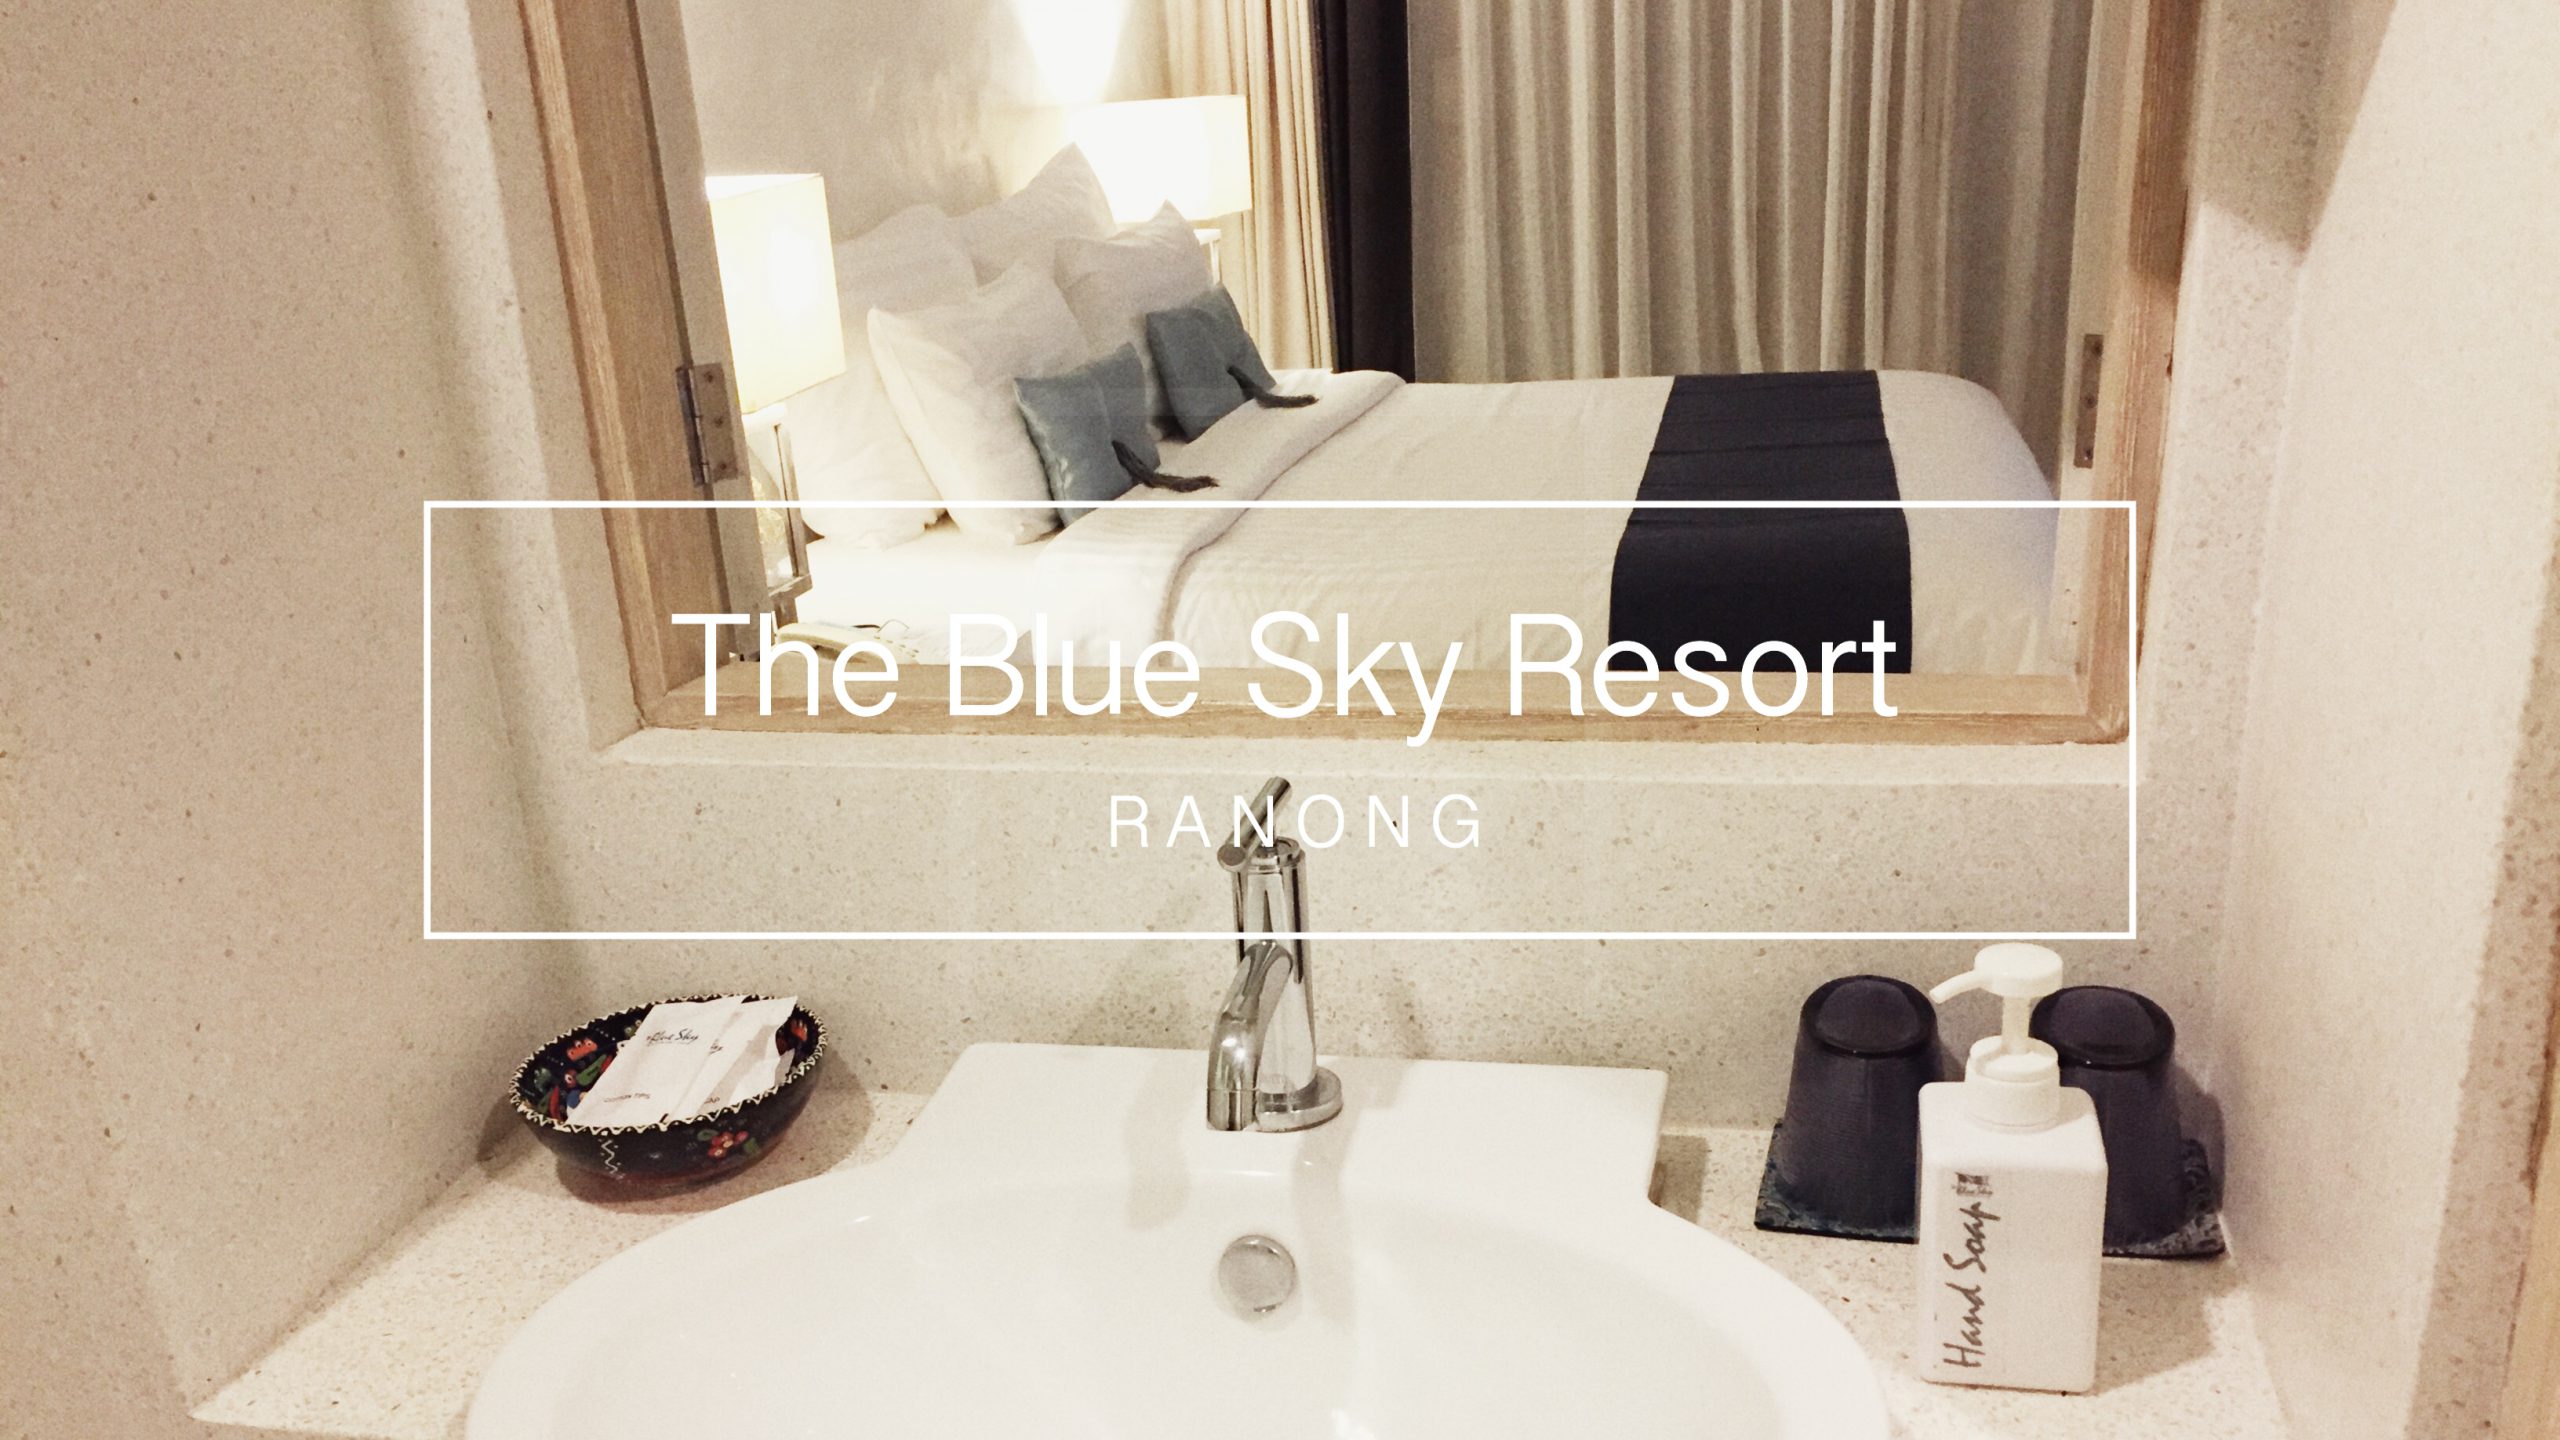 The Blue Sky Resort RANONG แหล่งดึกดำบรรพ์ของซาตานล้างปฐพี [ทางเข้าน่ากลัวมาก ธรรมชาติสุดๆ ฮาๆ]